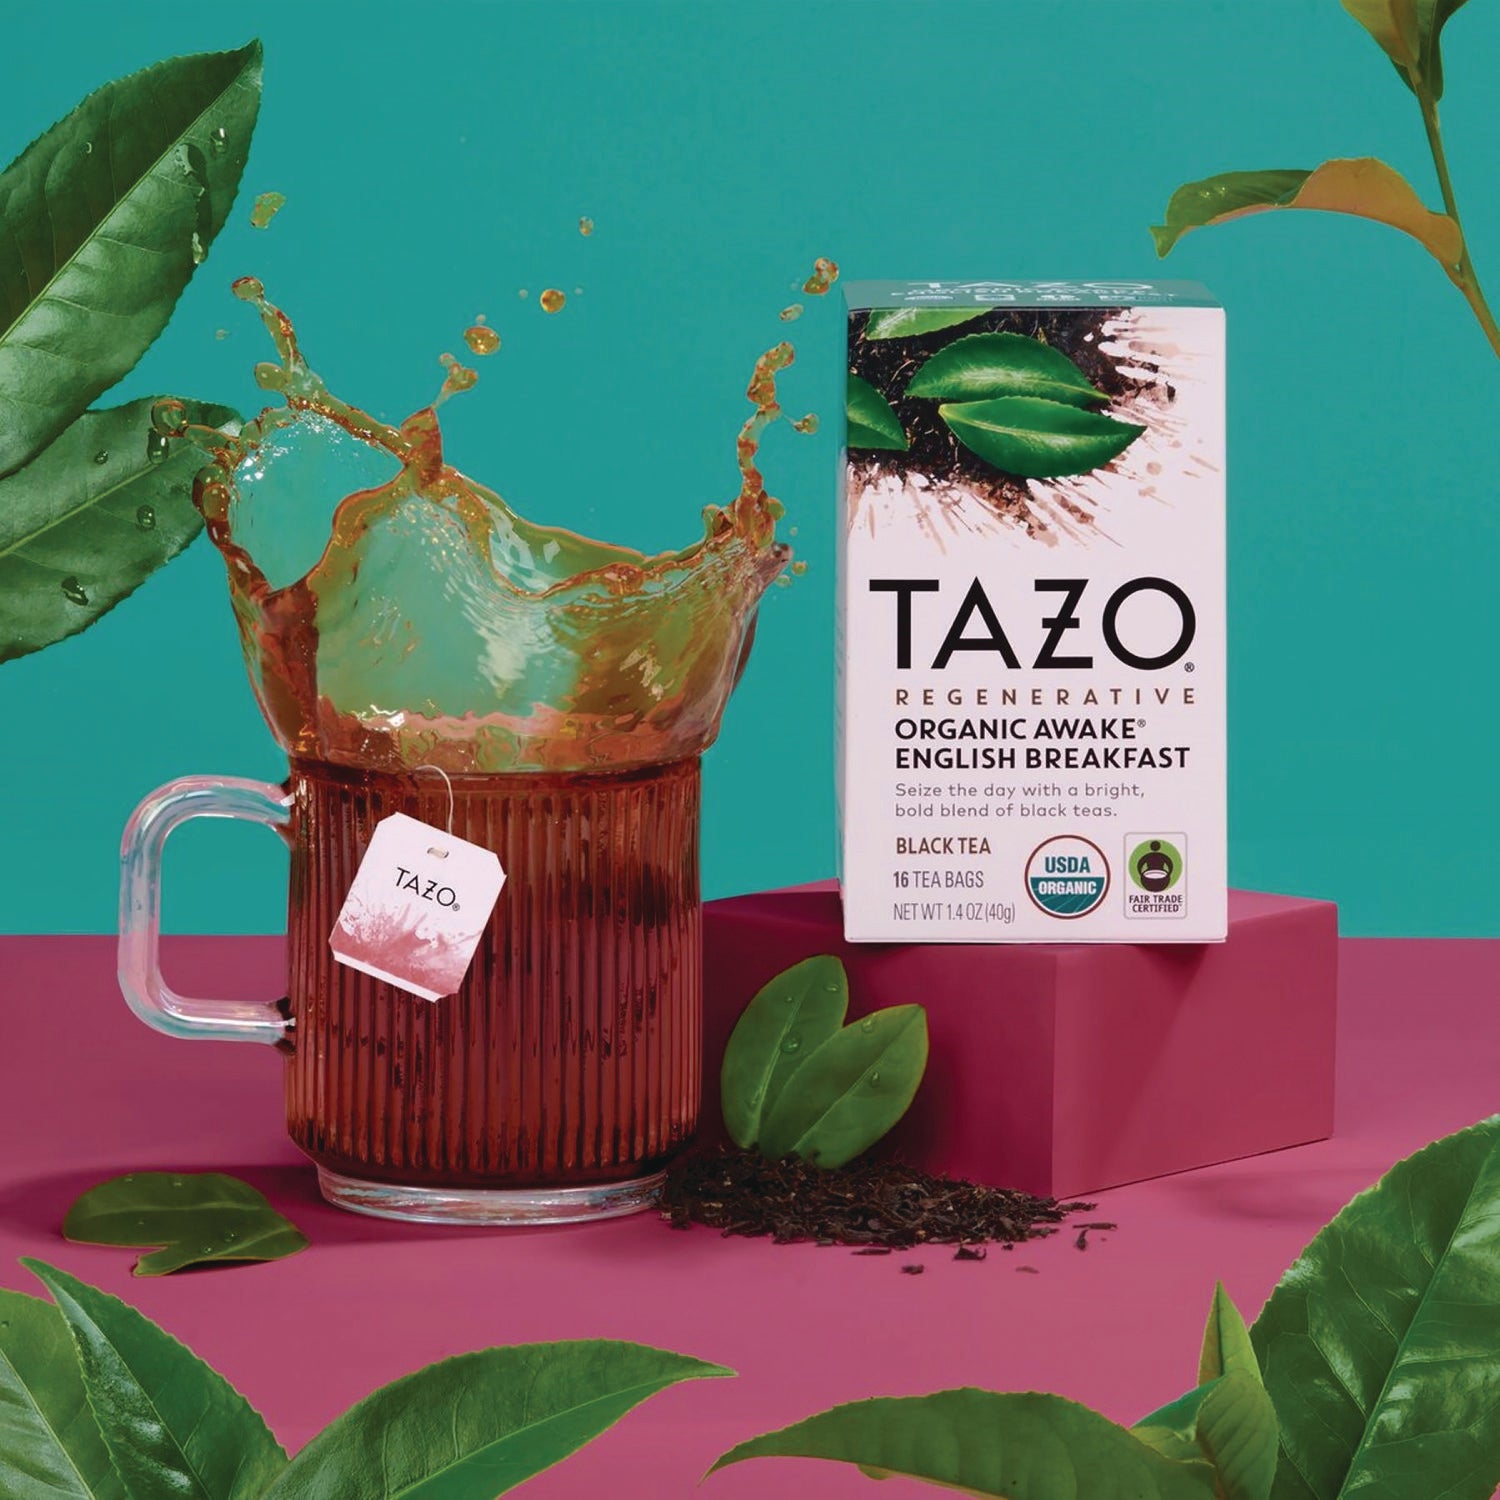 tea-bags-organic-awake-english-breakfast-16-box-6-boxes-carton_tzo00303 - 2